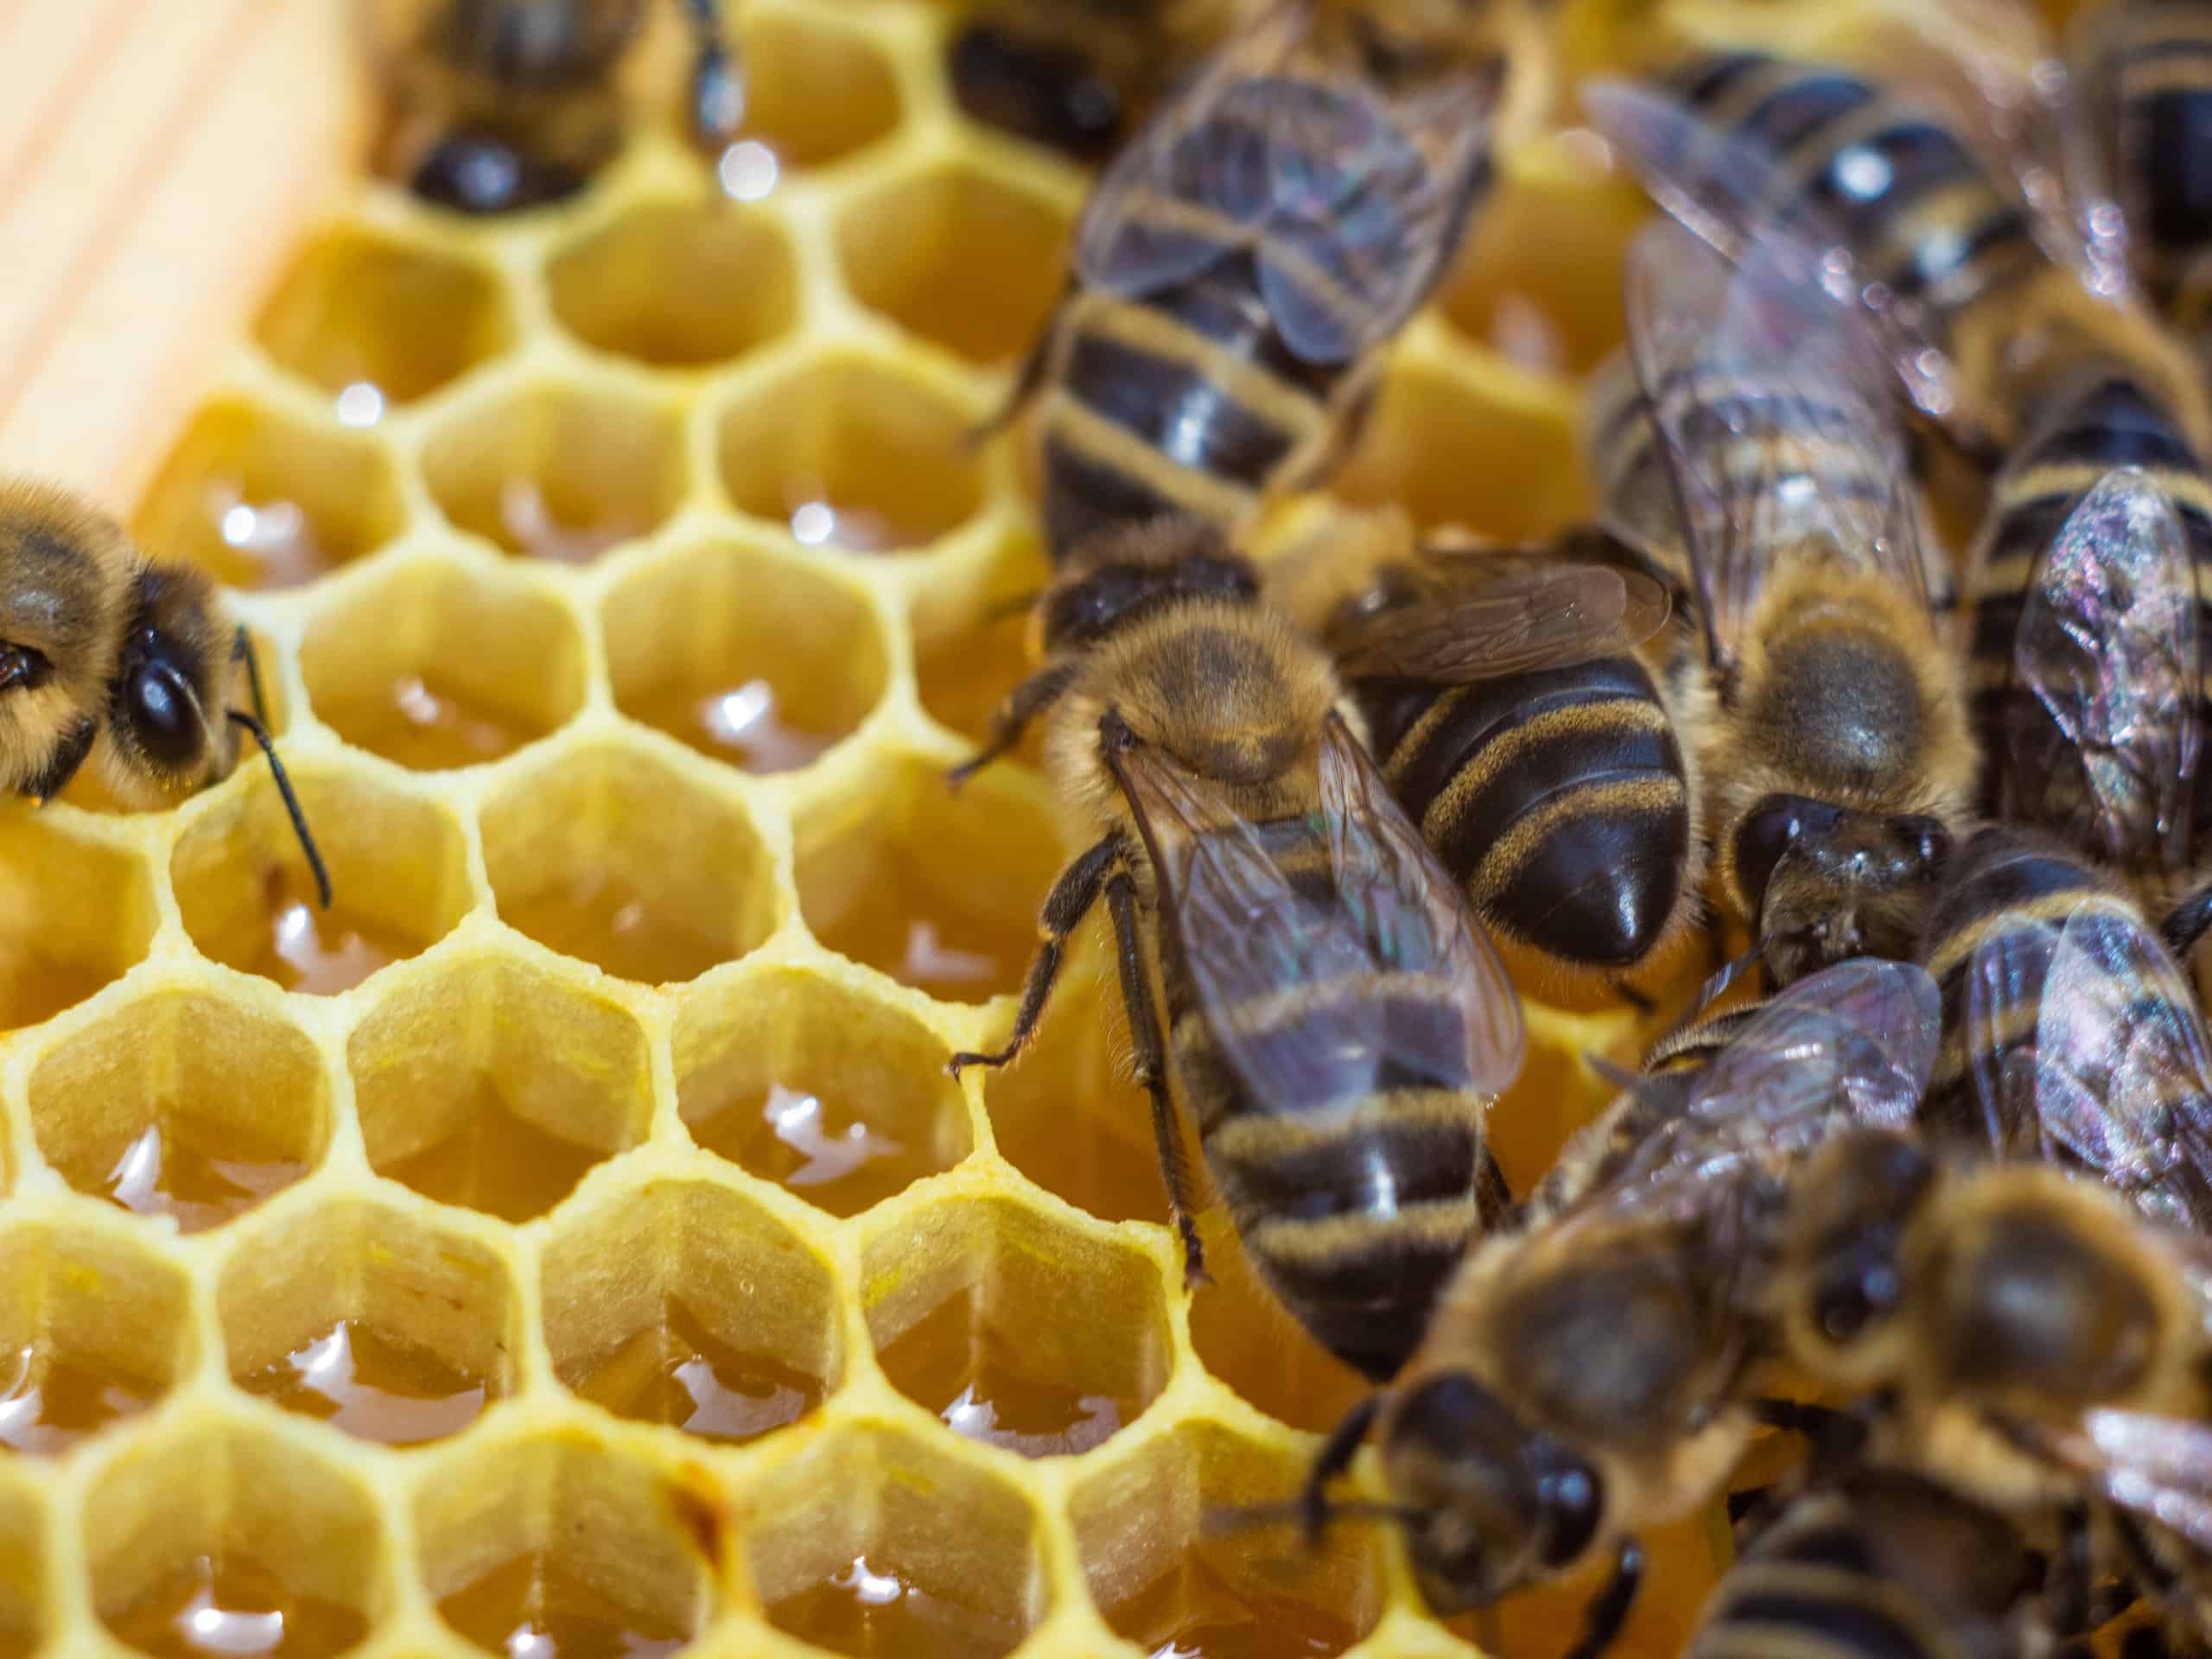 do killer bees make honey